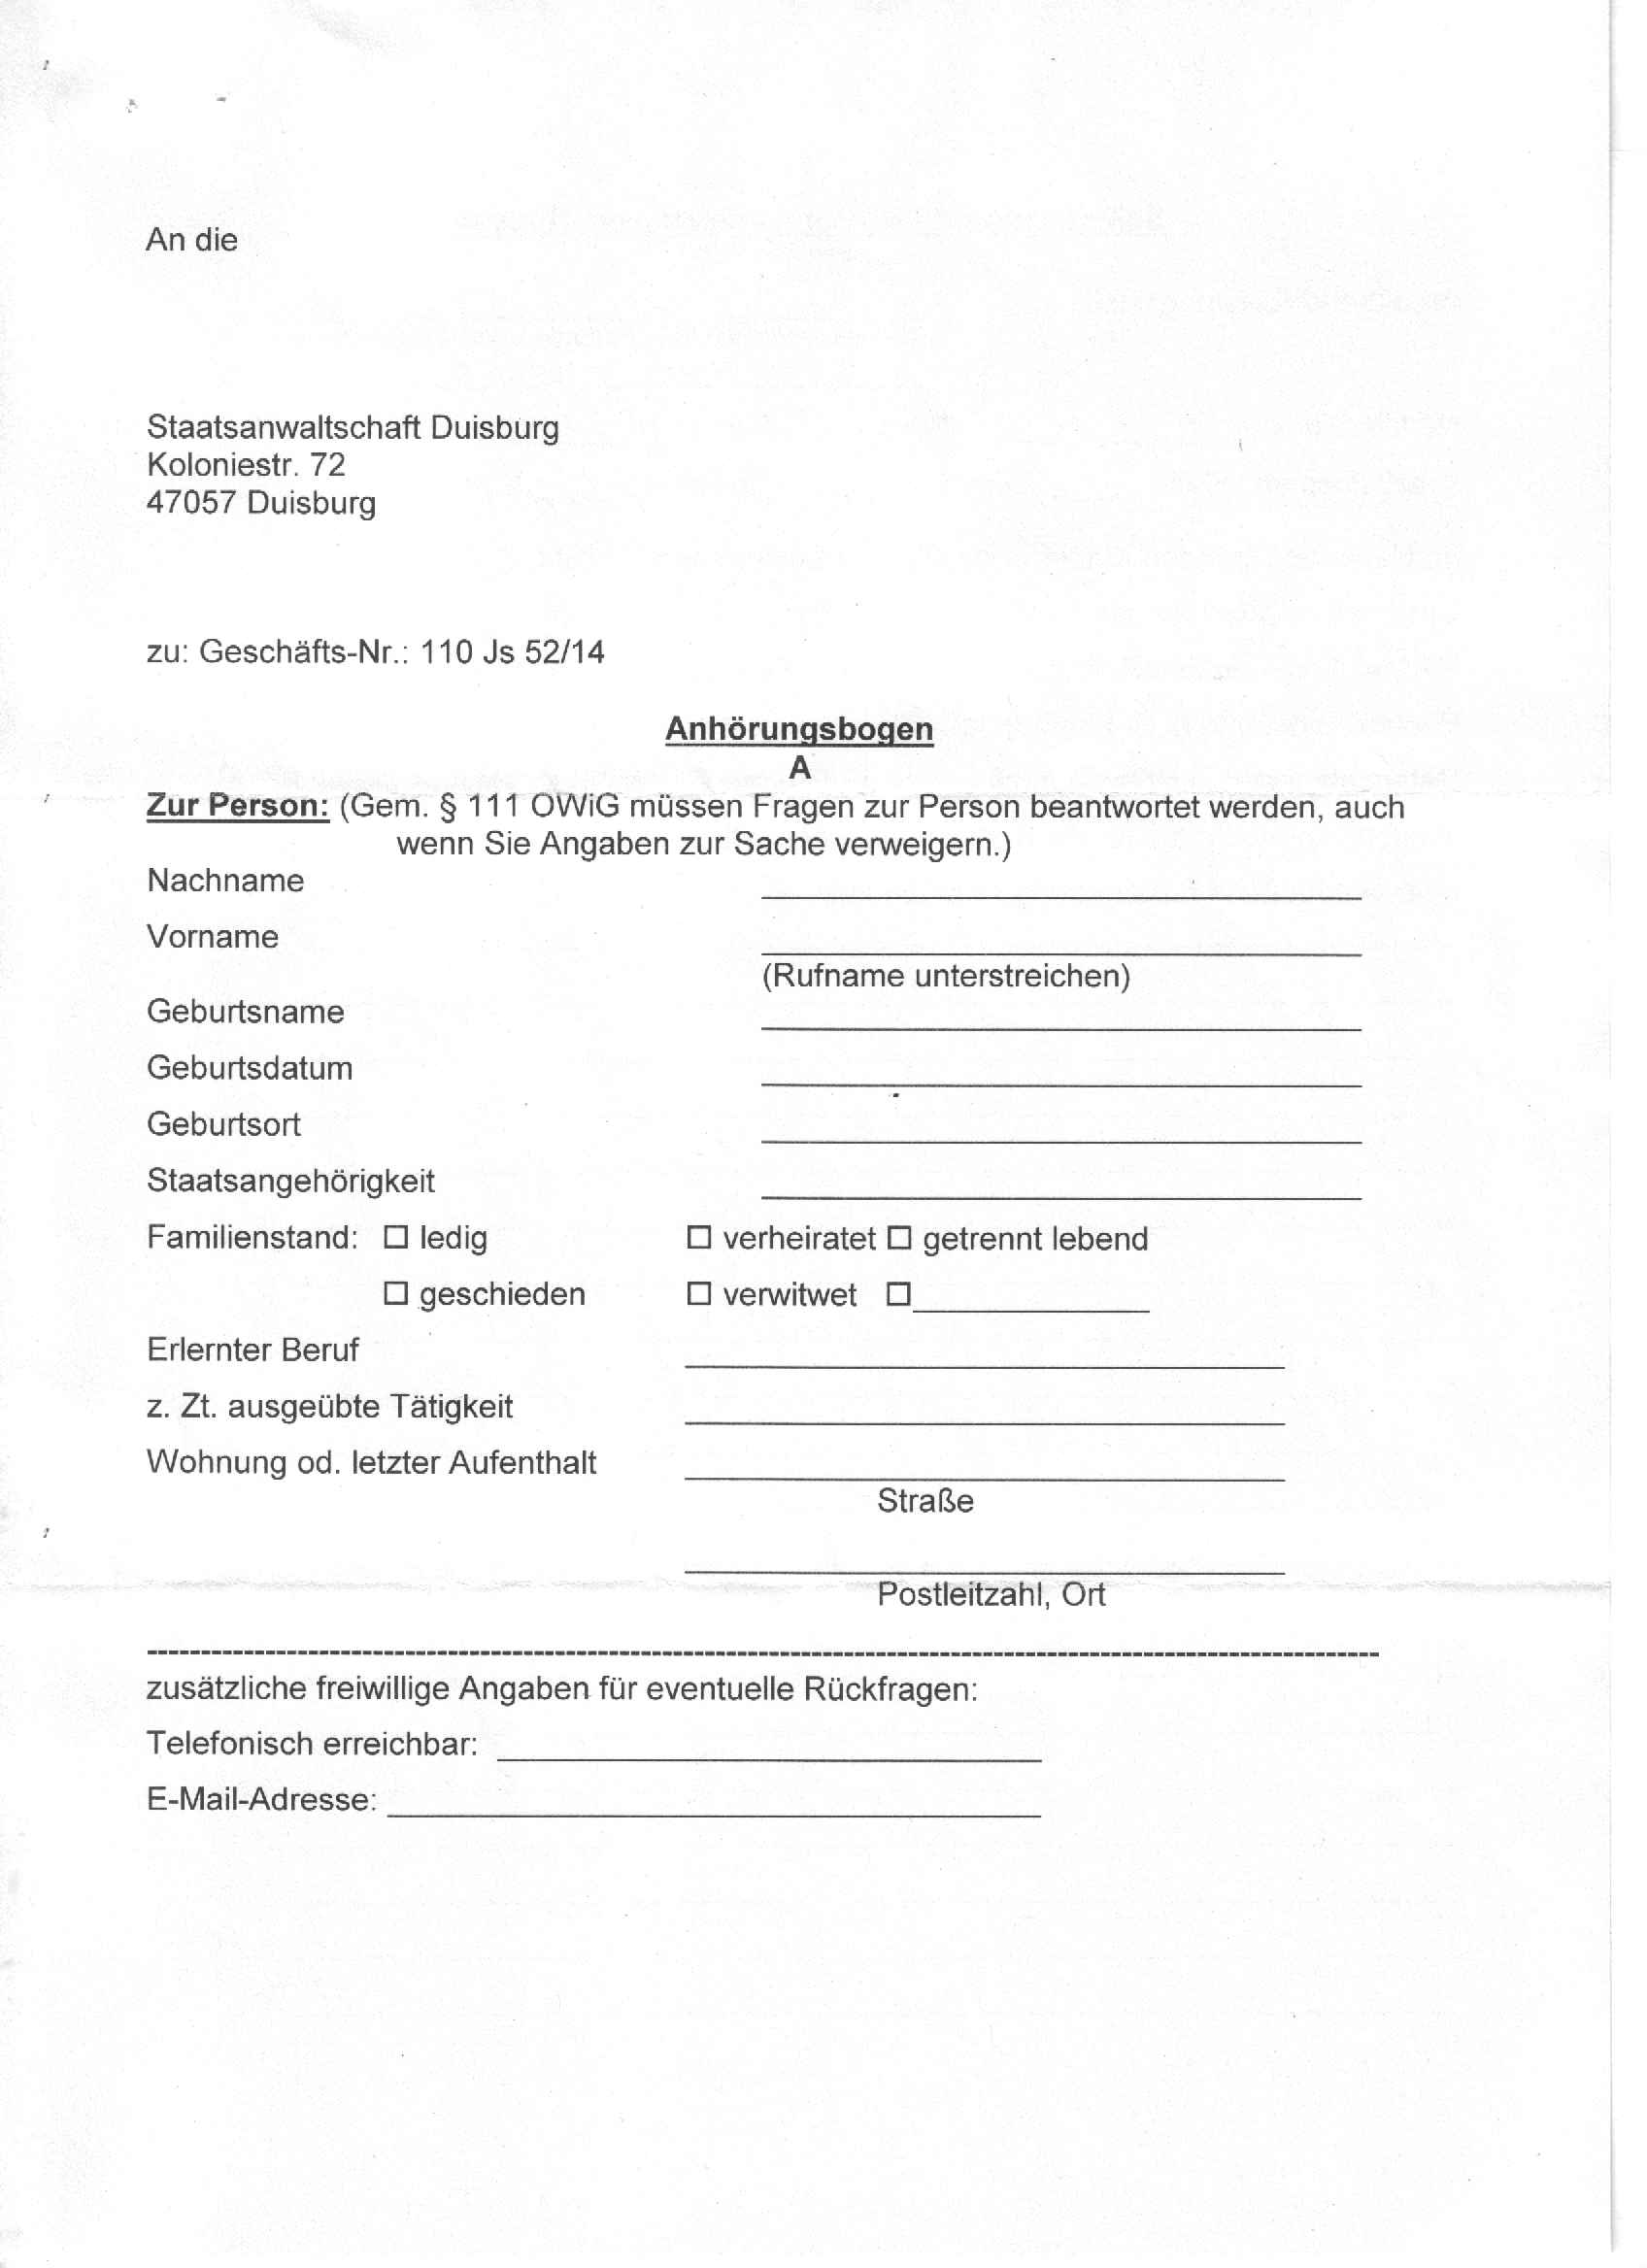 Anhörungsbogen des Oberstaatsanwaltes Wolfgang Seither vom 05.11.2014